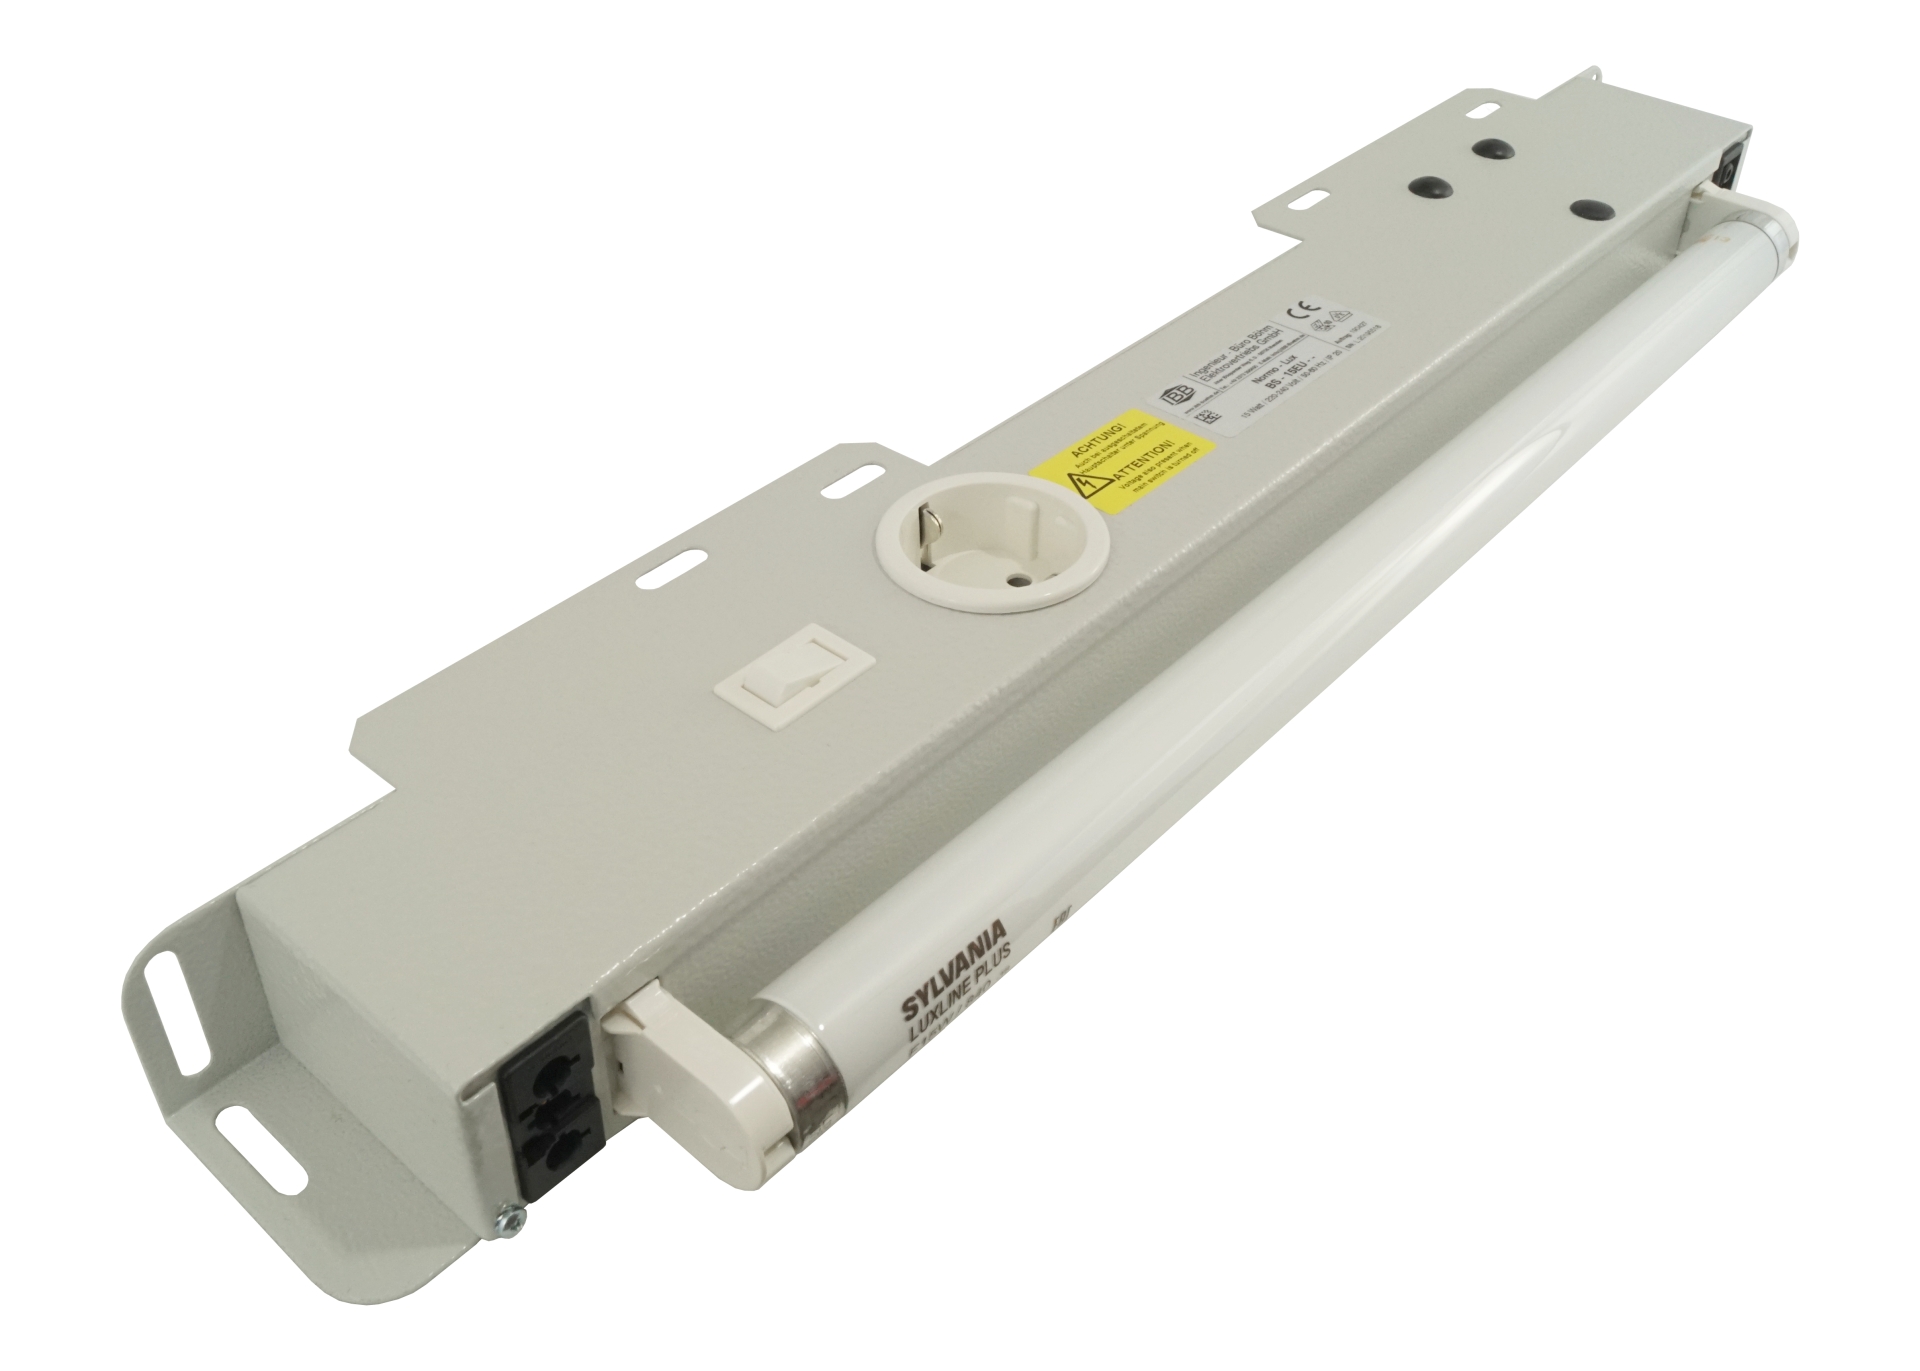 Abbildung Schaltschrankleuchte Normo-Lux 15 Watt, 220-240 Volt/50-60Hz | EvG, ab 800mm Schrankbreite